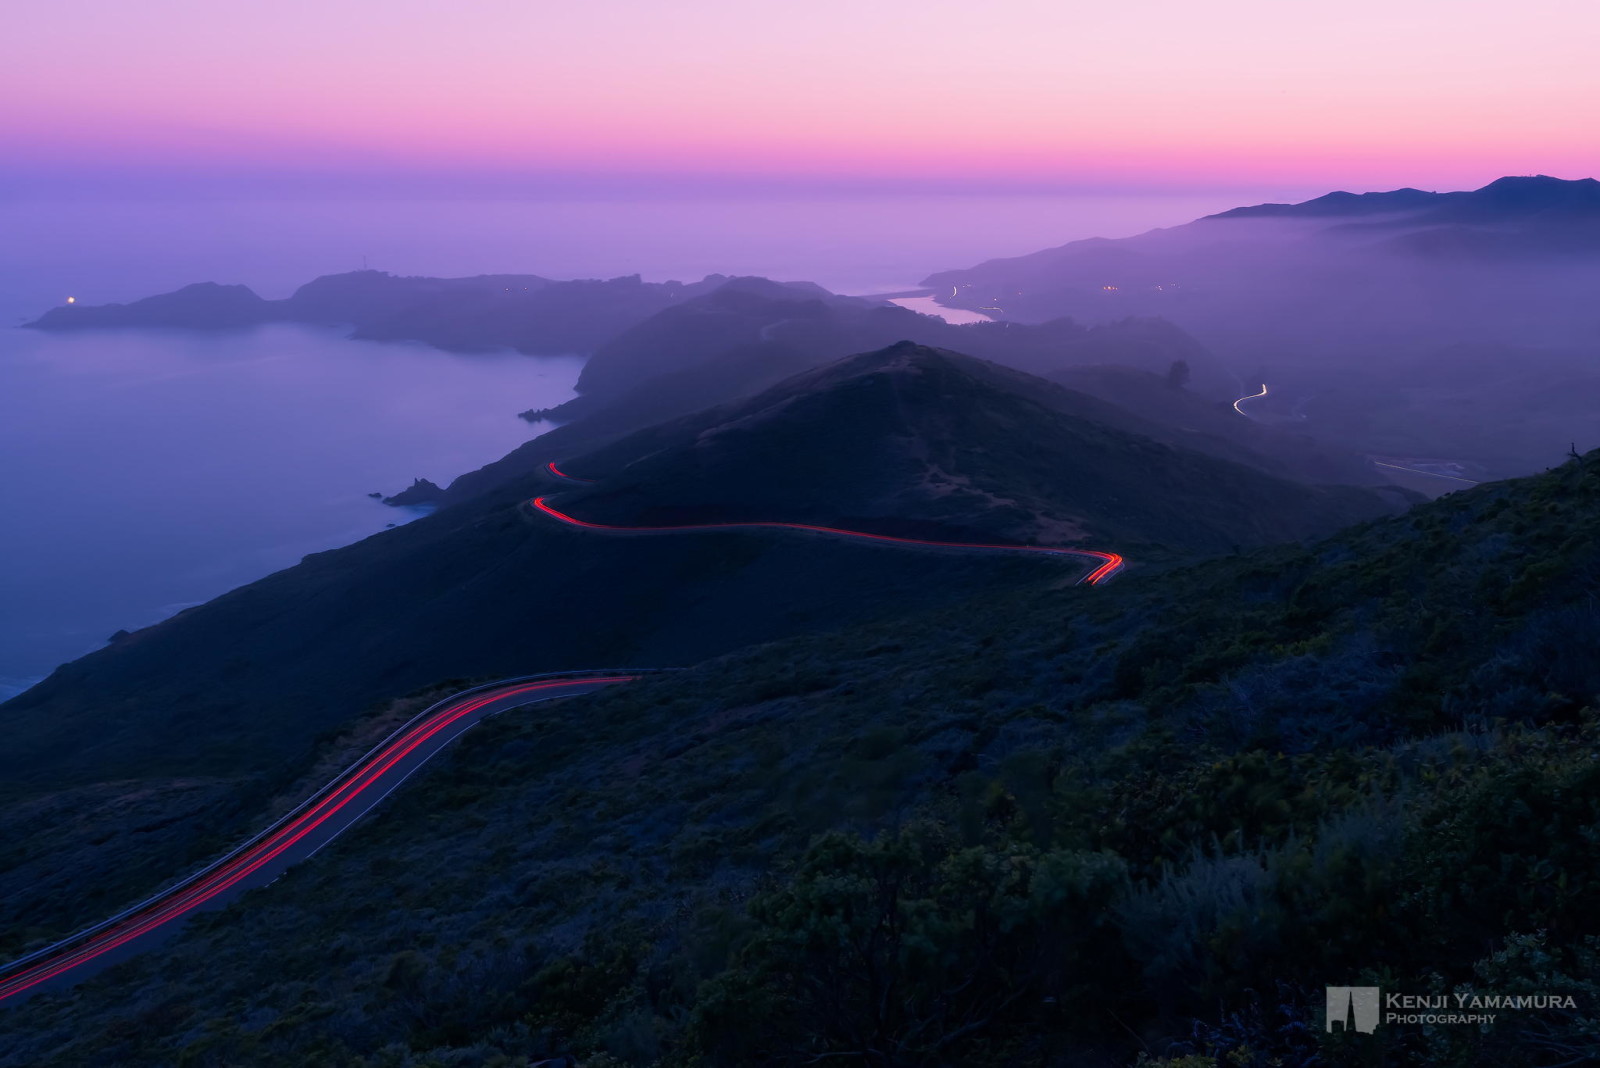 đường, đèn, núi, Hoàng hôn, sương mù, nhiếp ảnh gia, Kenji Yamamura